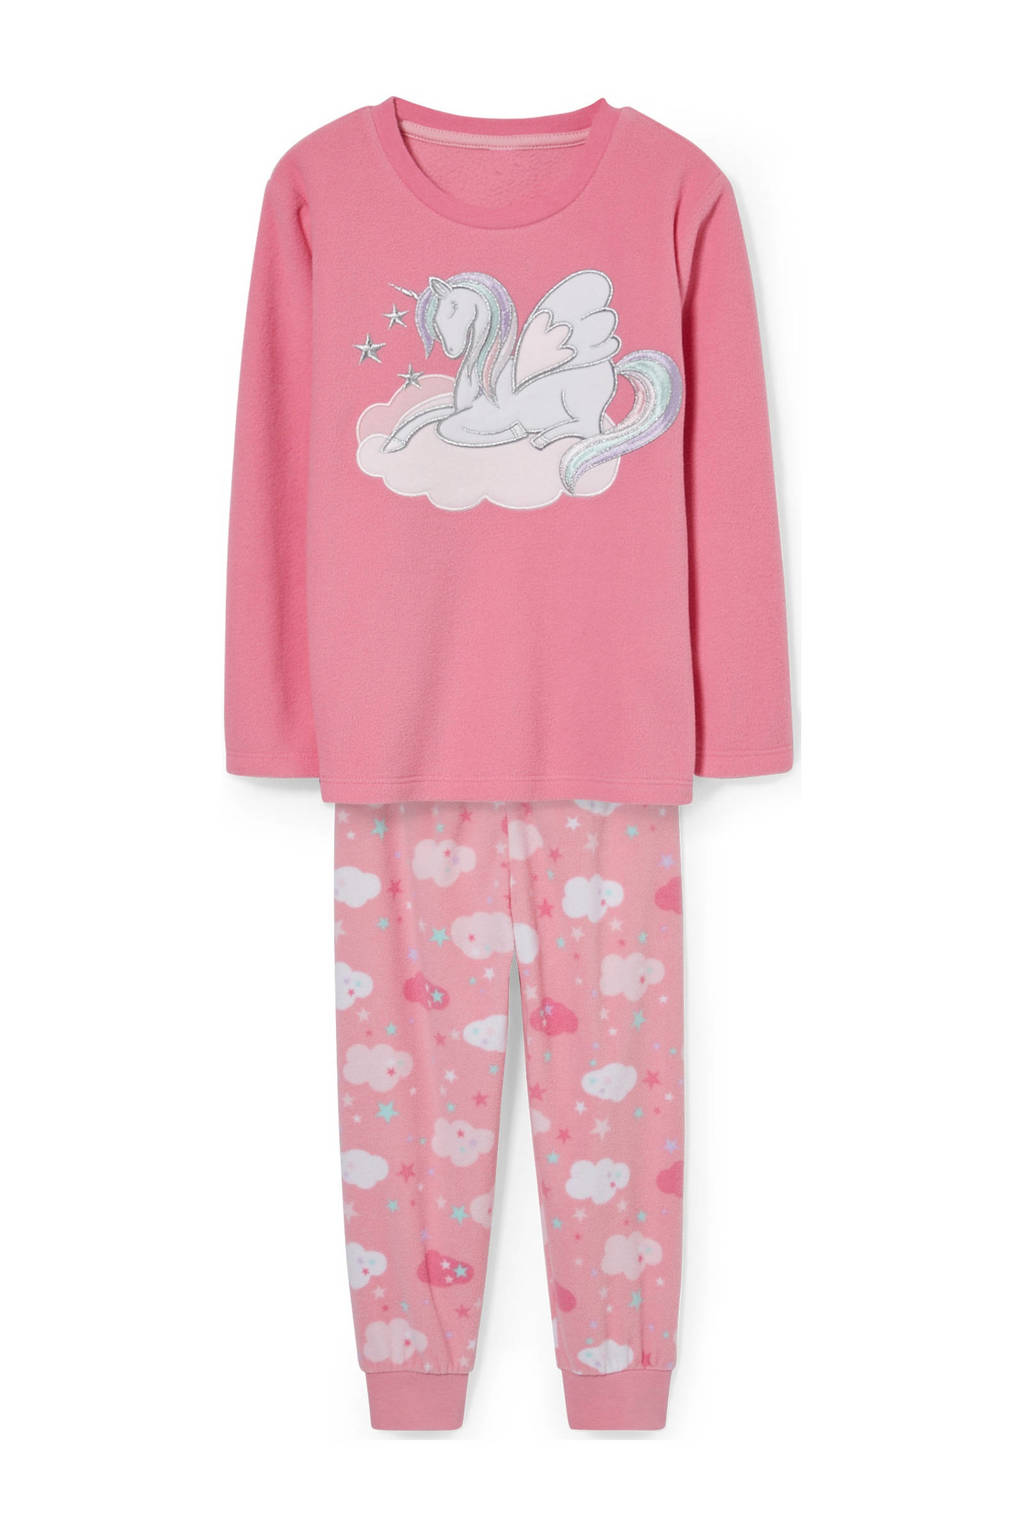 C&A pyjama met printopdruk roze, Roze